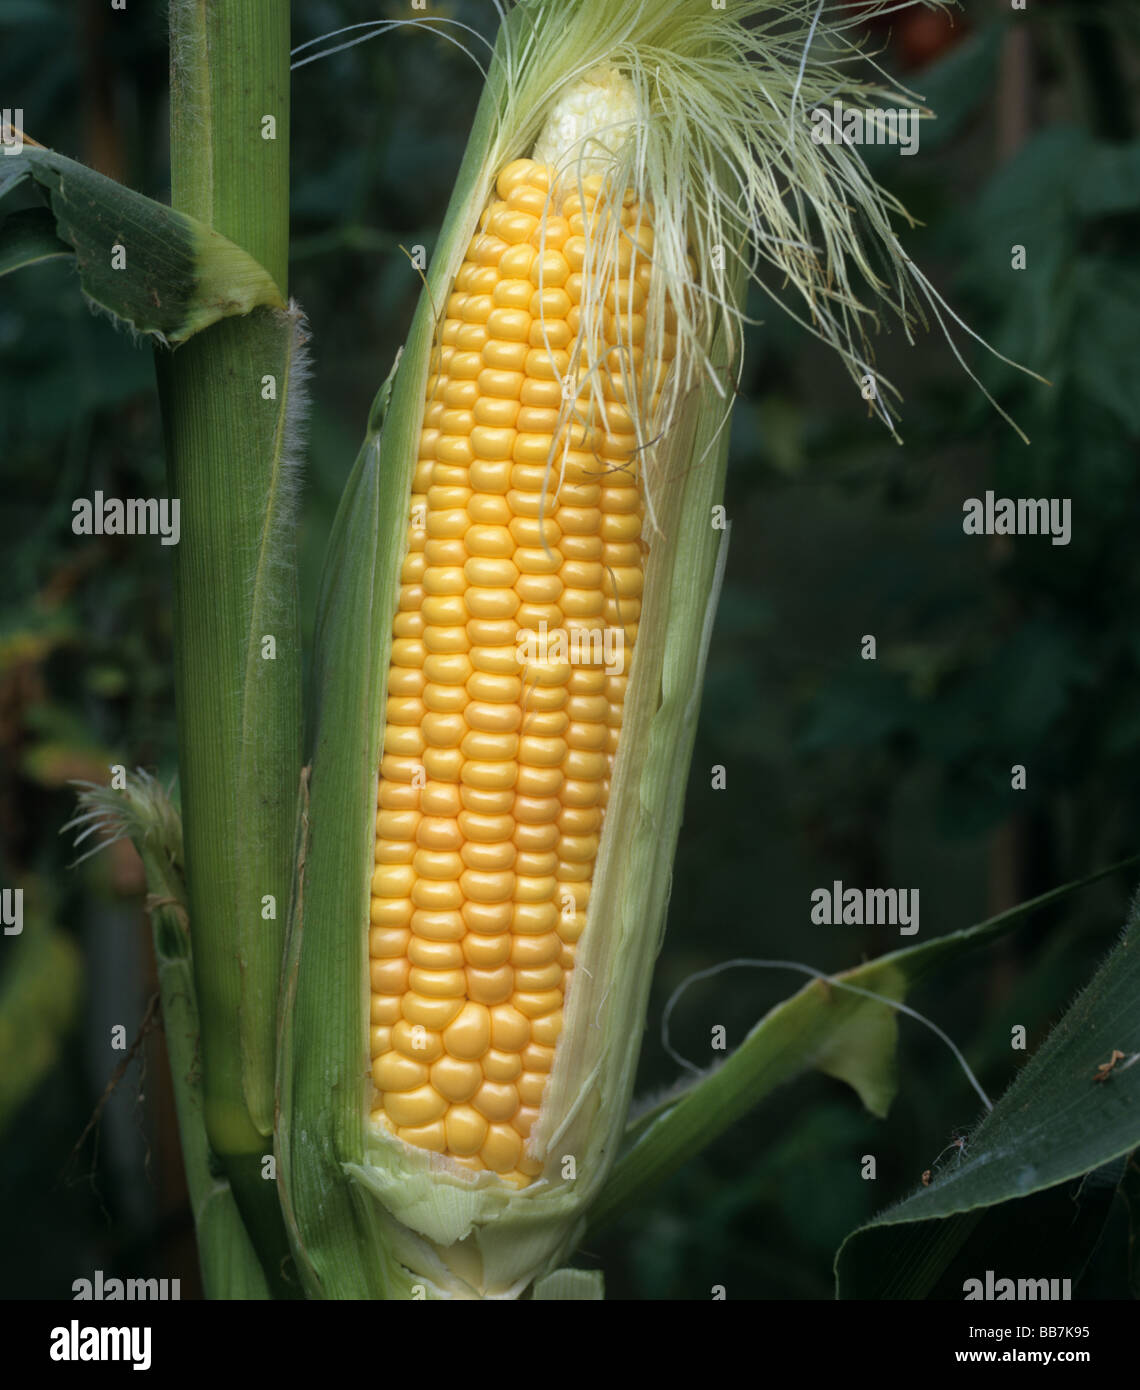 Mazorca de maíz dulce madura expuesta Foto de stock